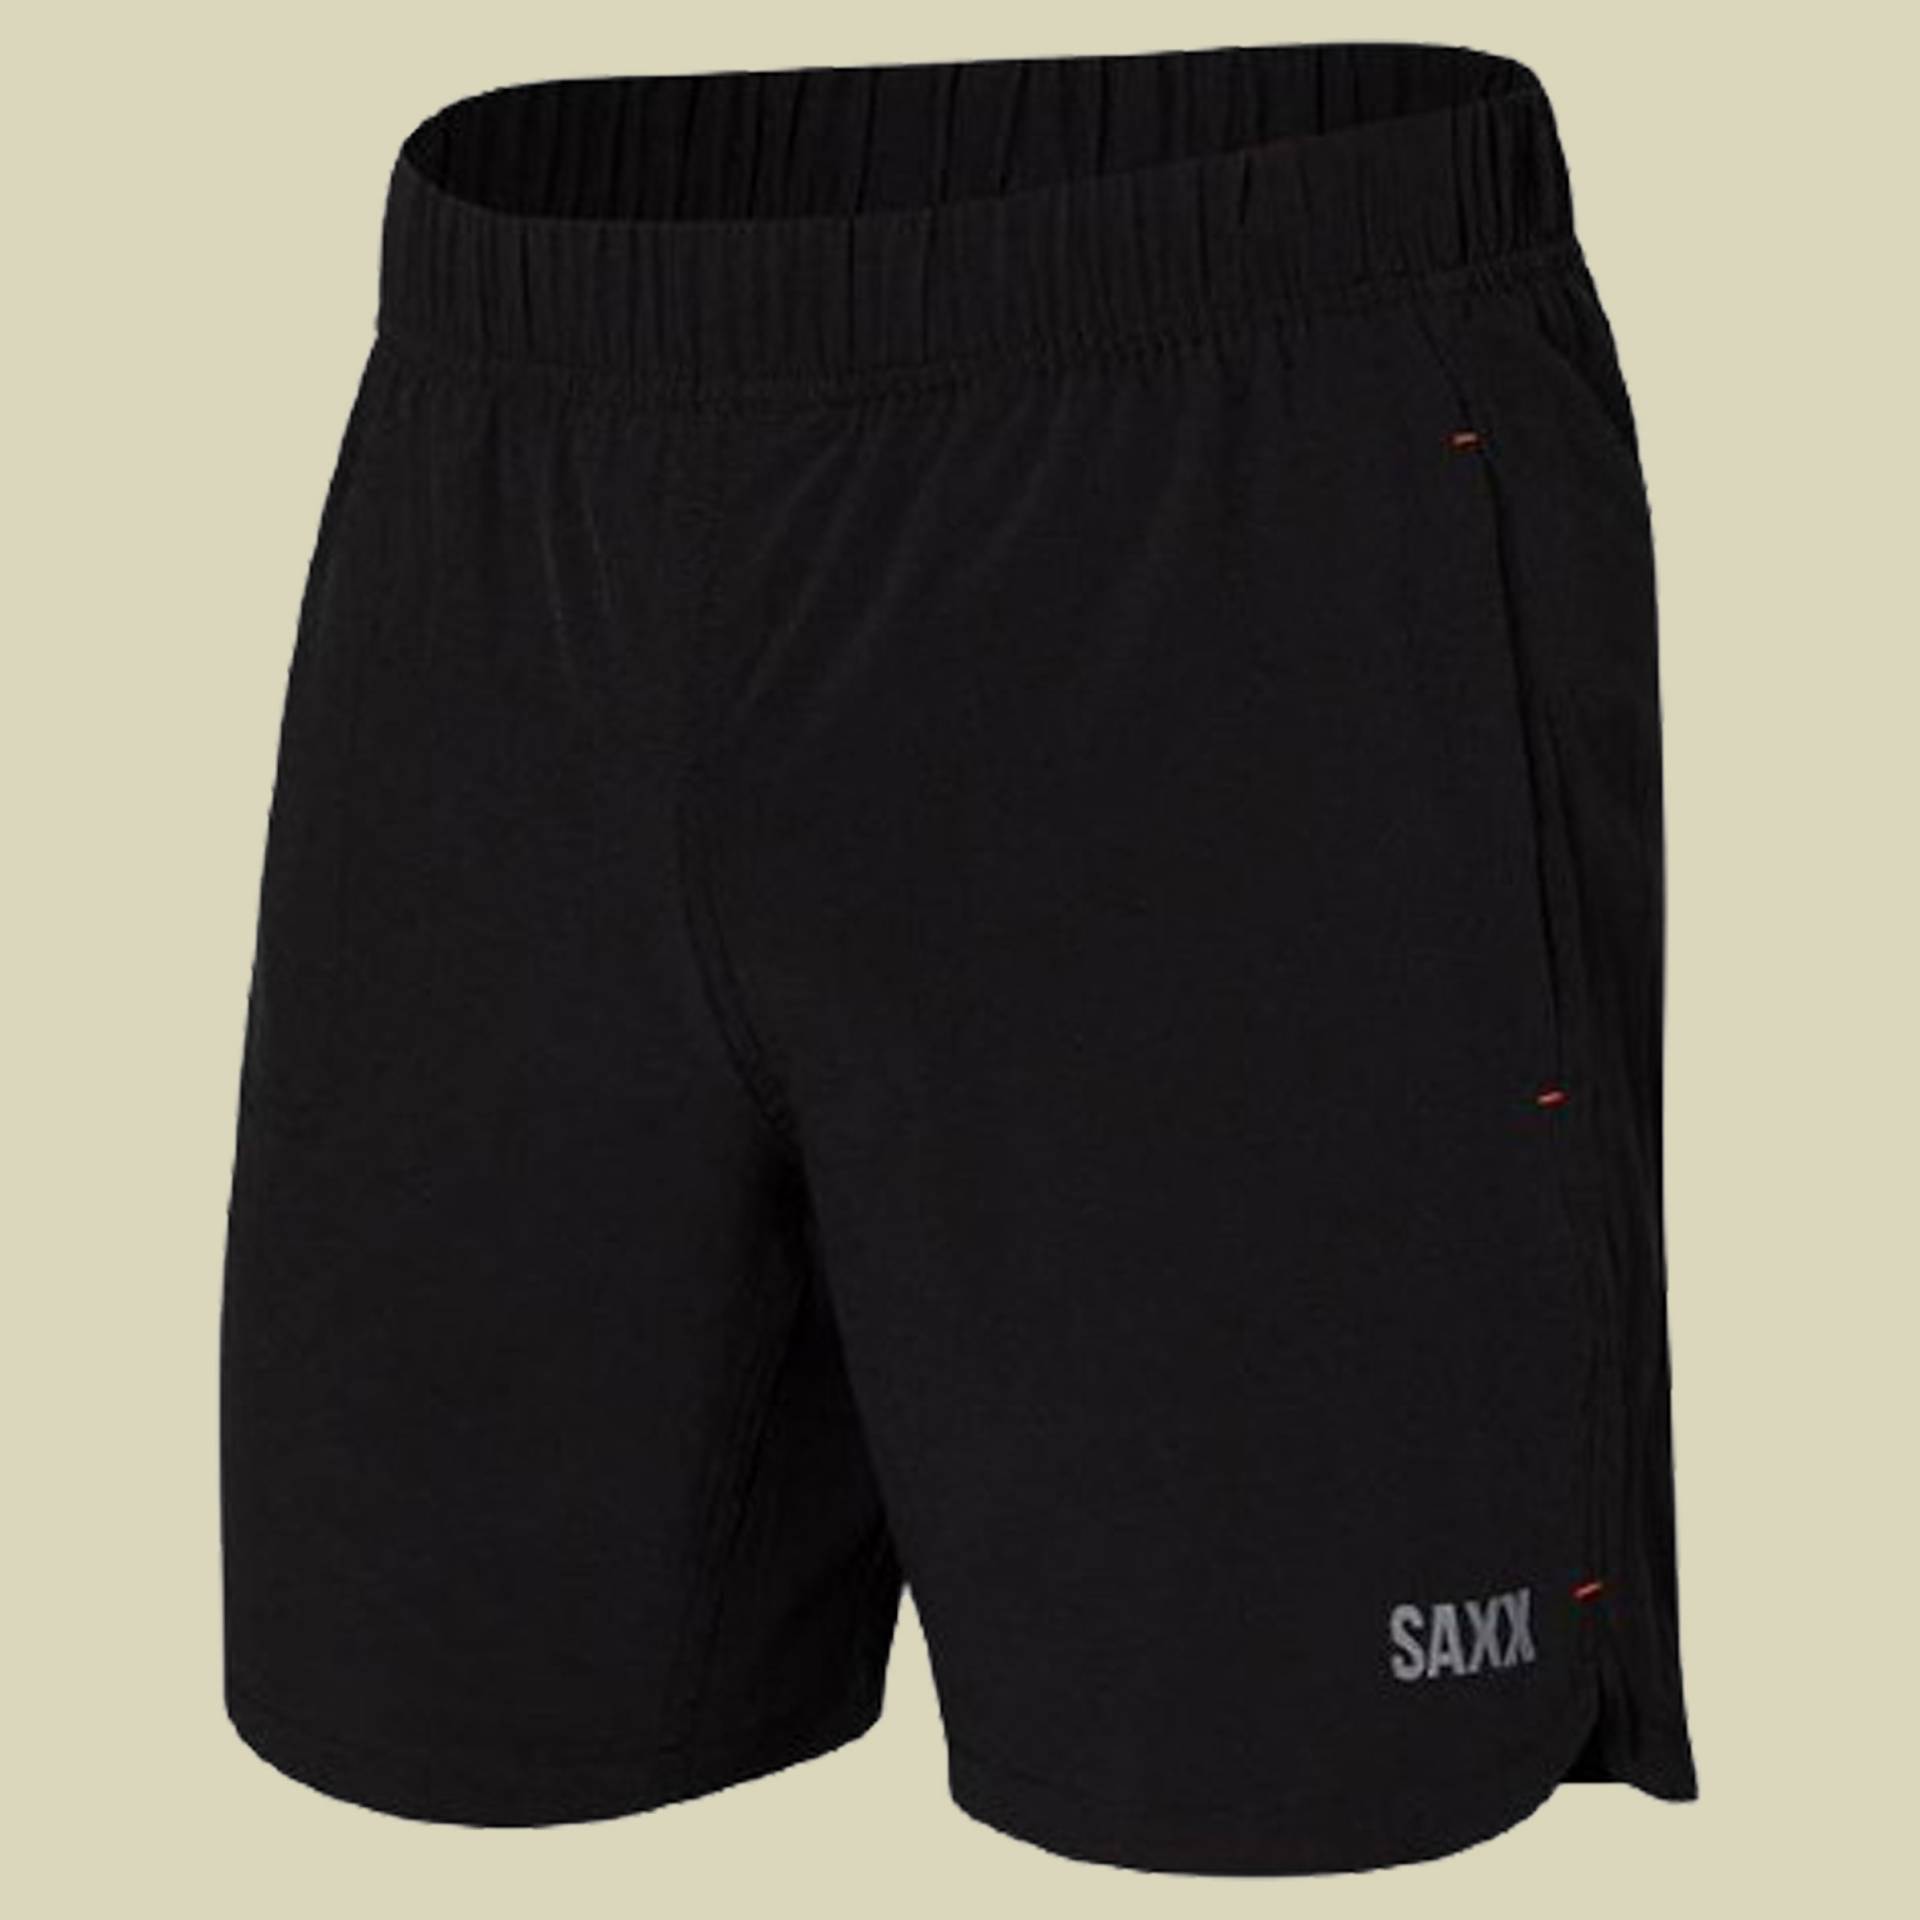 Gainmaker 2N1 Shorts 7“ Größe S Farbe black von Saxx